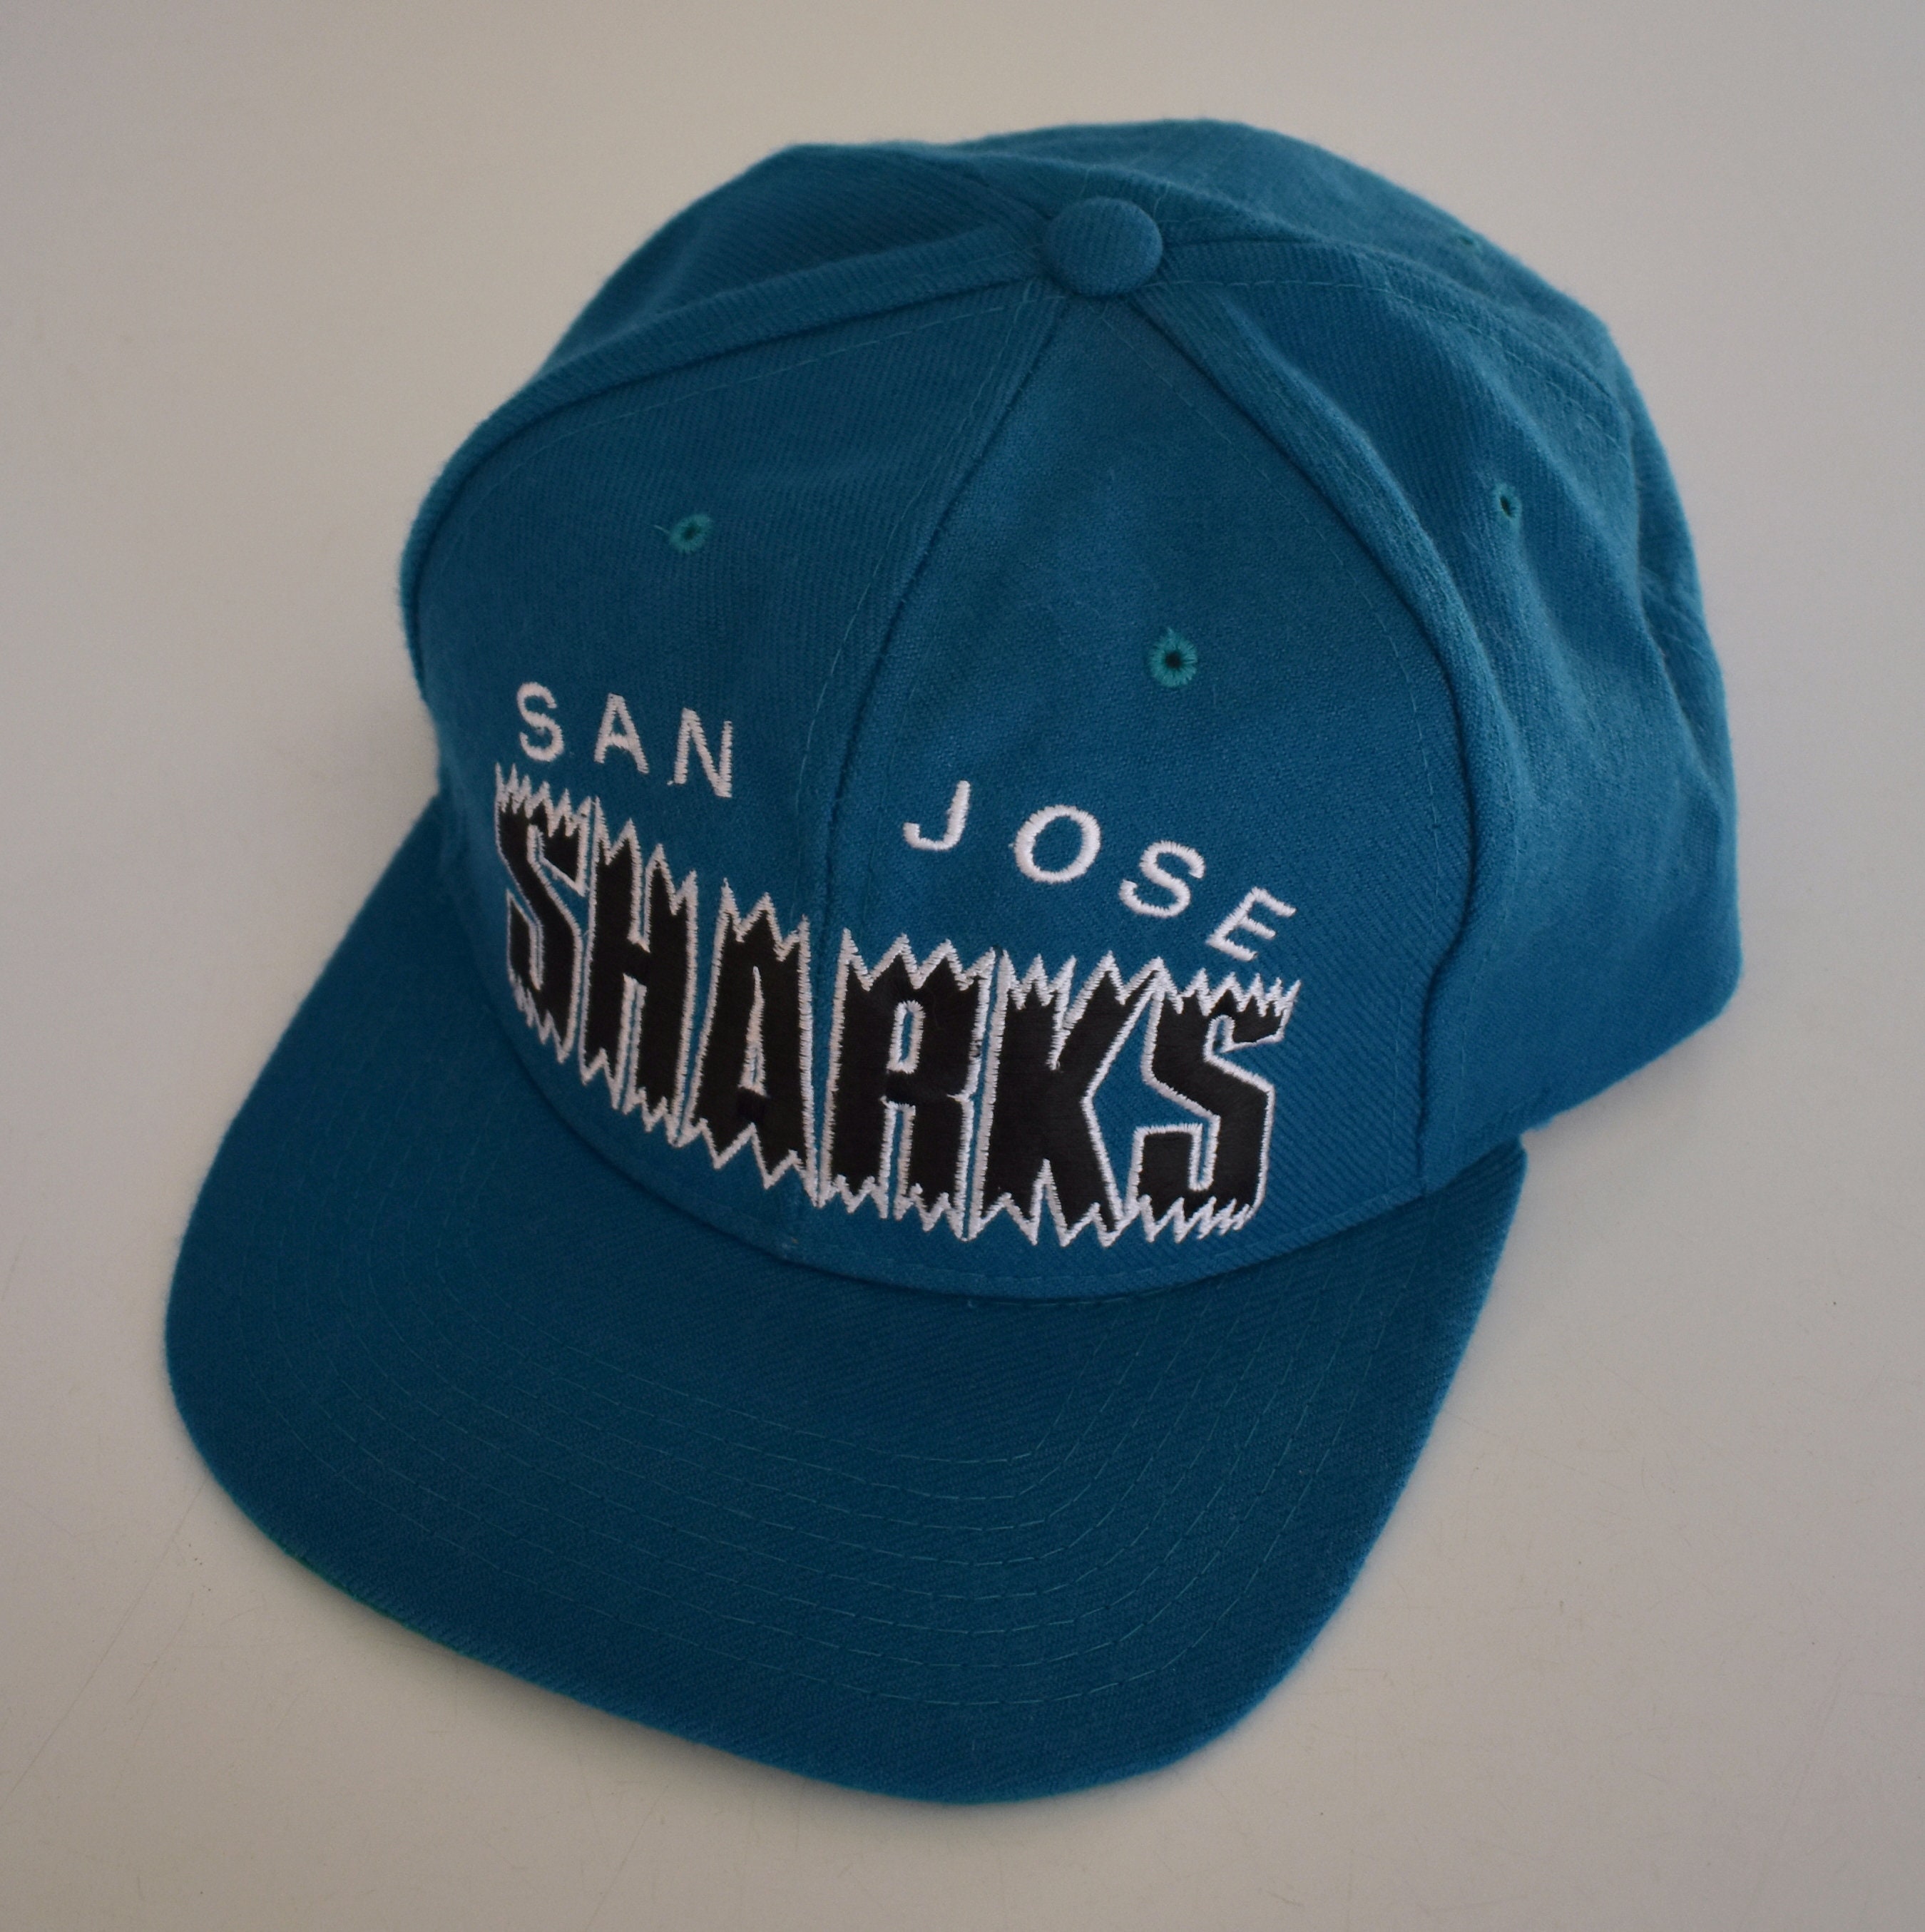 Buy Vintage San Jose Sharks Heather Snapback Hat Online at desertcartEGYPT